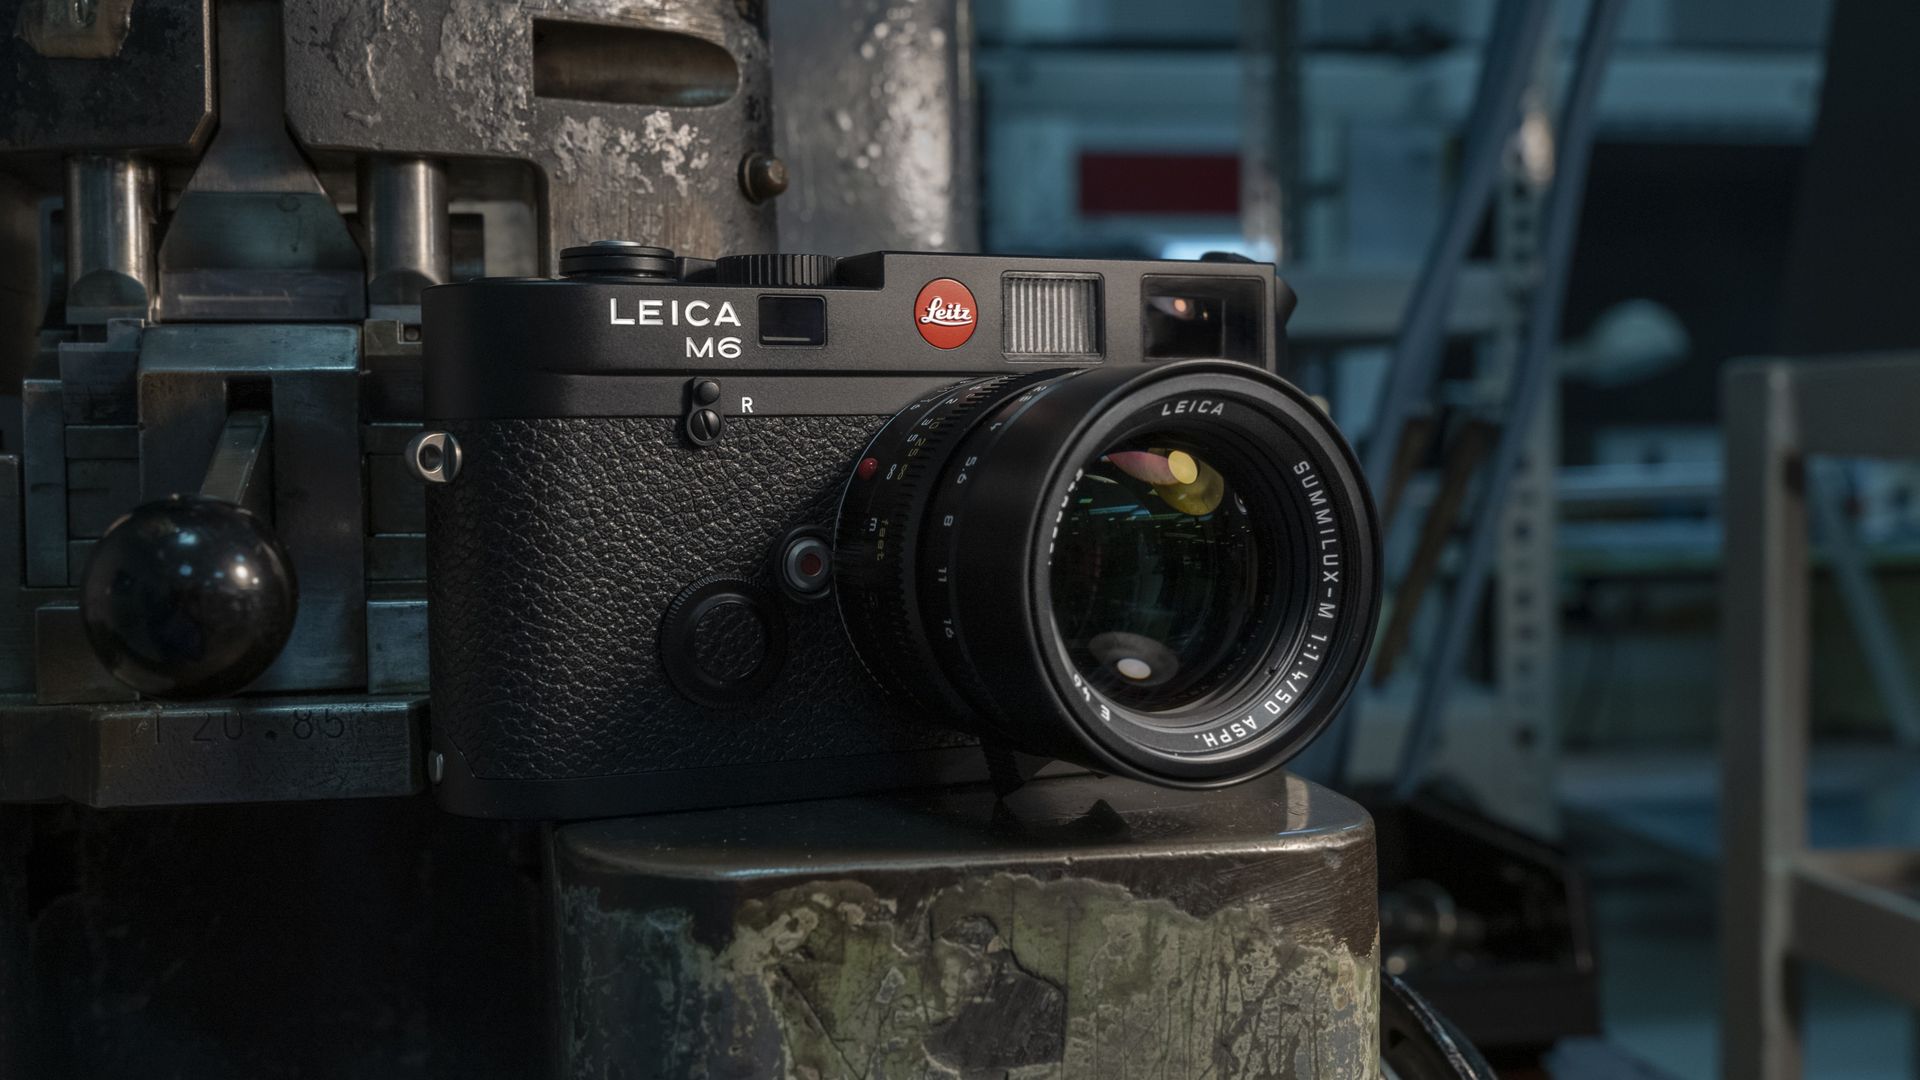 The 2022 Leica M6 camera.